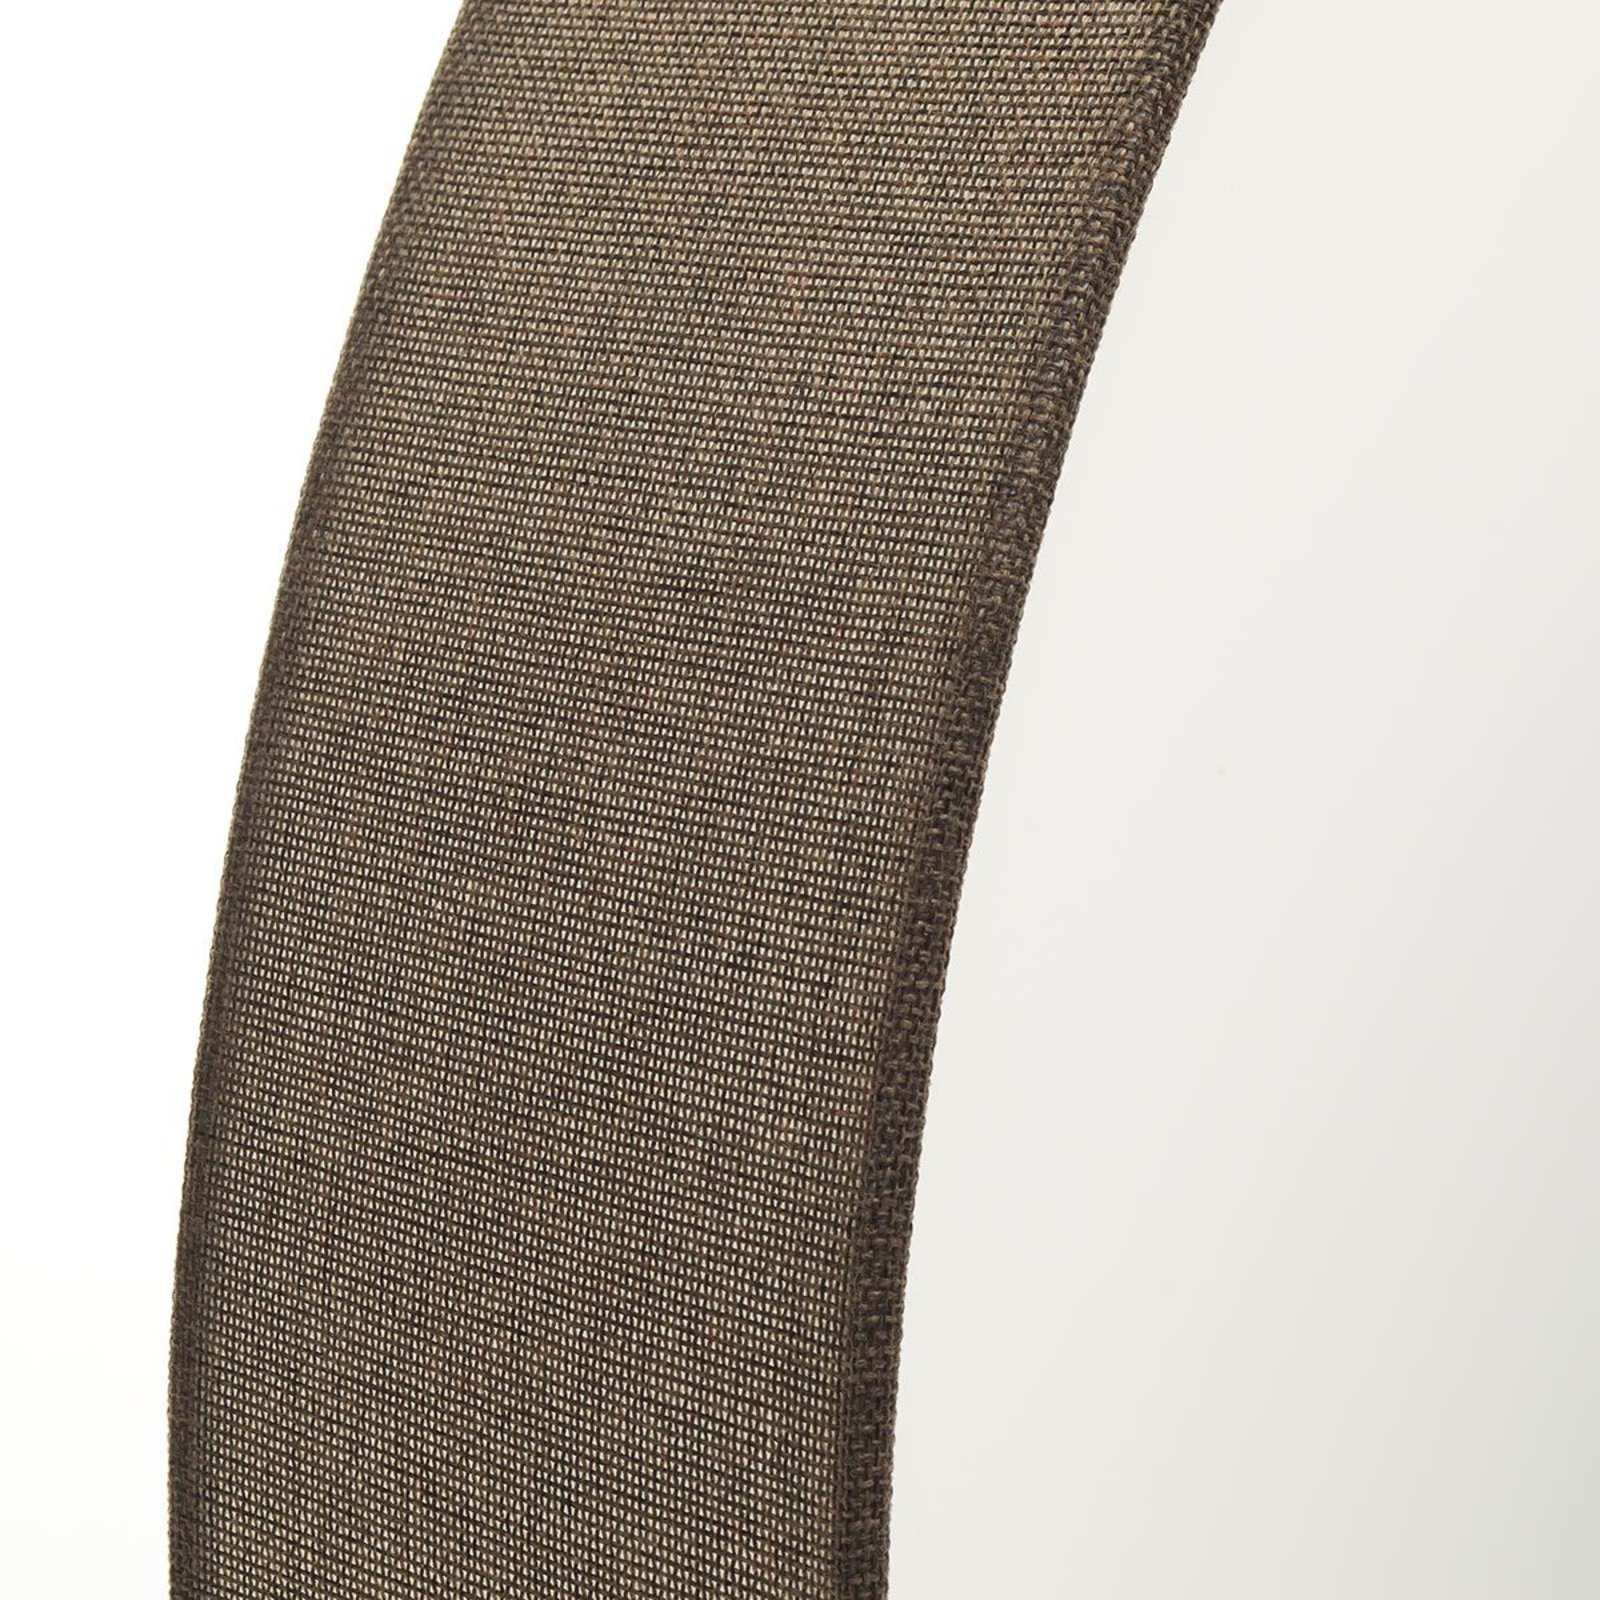 Ruskea Pasteri-tekstiilikattovalaisin 76 cm